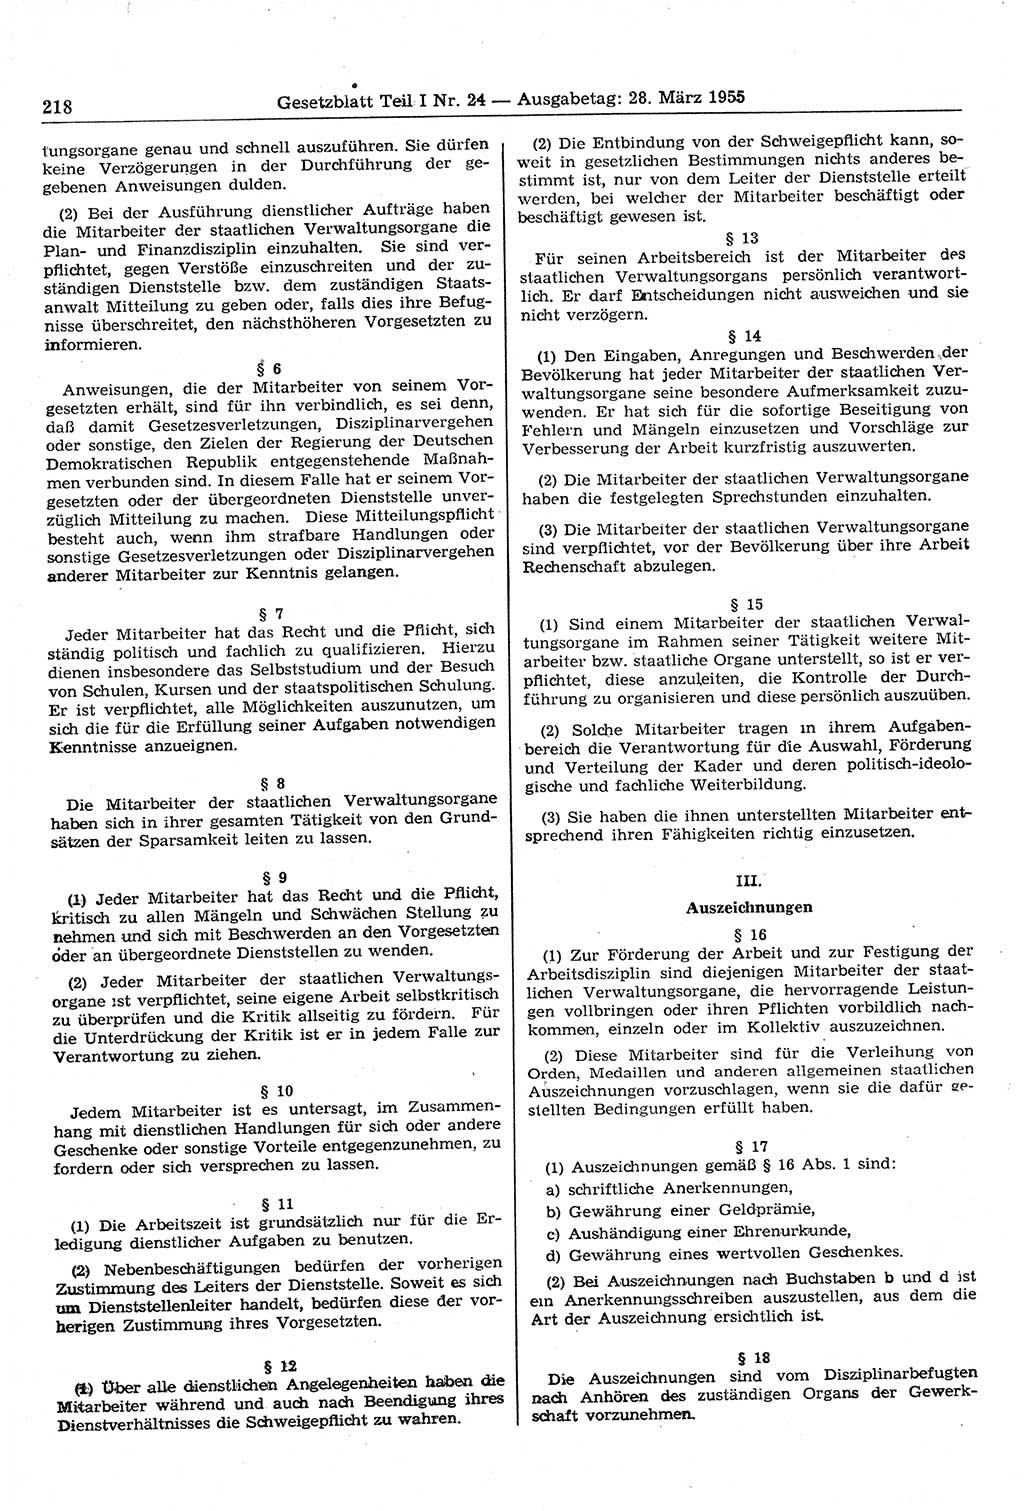 Gesetzblatt (GBl.) der Deutschen Demokratischen Republik (DDR) Teil Ⅰ 1955, Seite 218 (GBl. DDR Ⅰ 1955, S. 218)